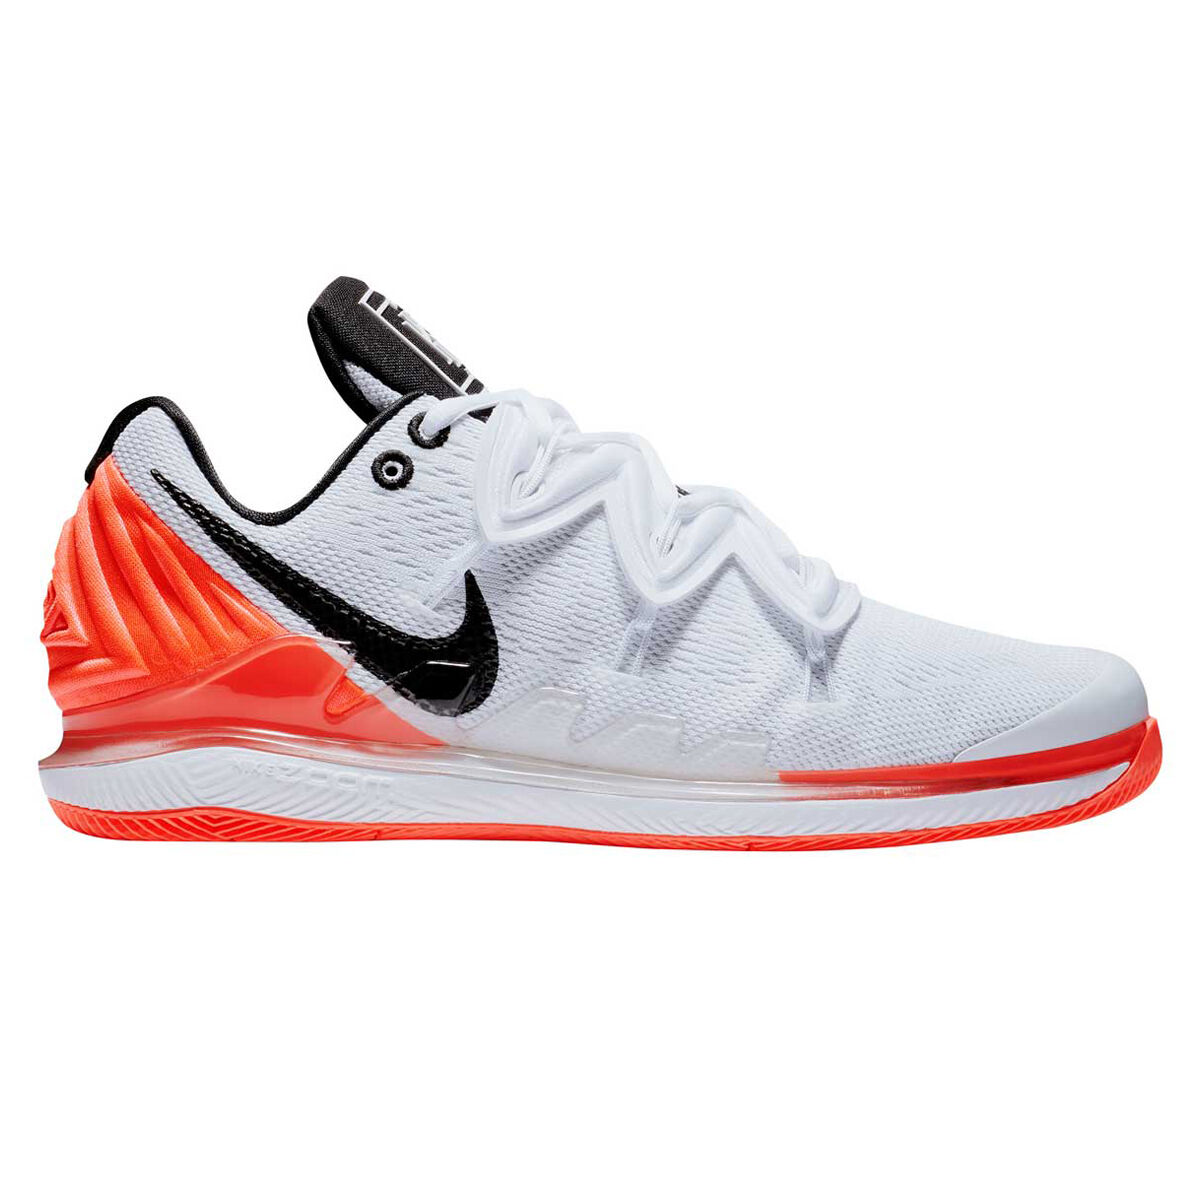 Nike Kyrie 5 Uncle Drew Black White Red AV7917 991 Outlet Price